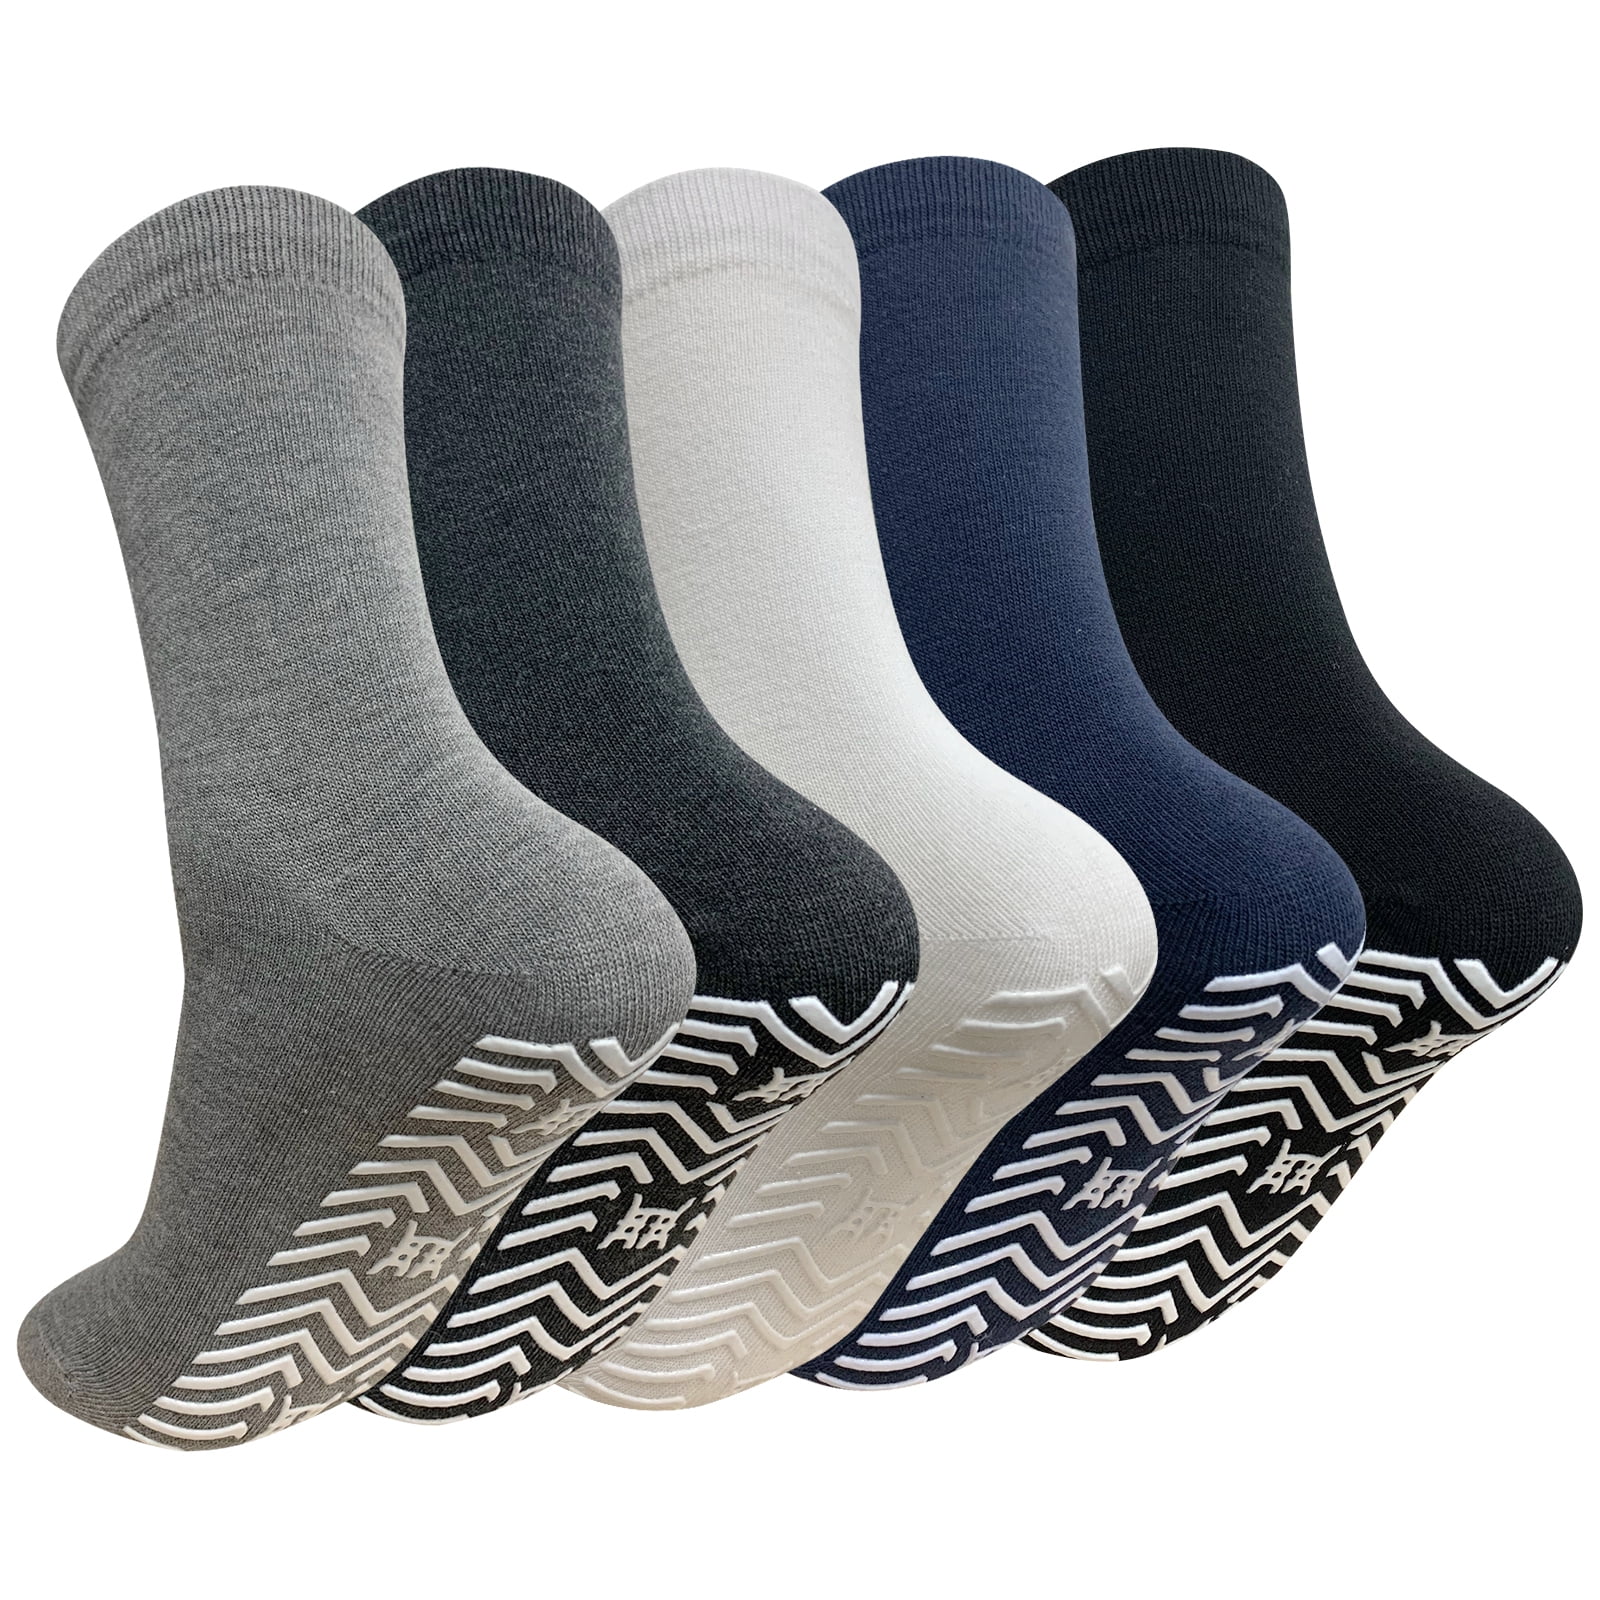 AMITOFO 5 Pairs Non Slip Grip Socks - Non Skid Socks Ideal for Yoga,  Pilates, Hospital Use - Men & Women's Crew Sticky Gripper Socks (Size 7-10)  